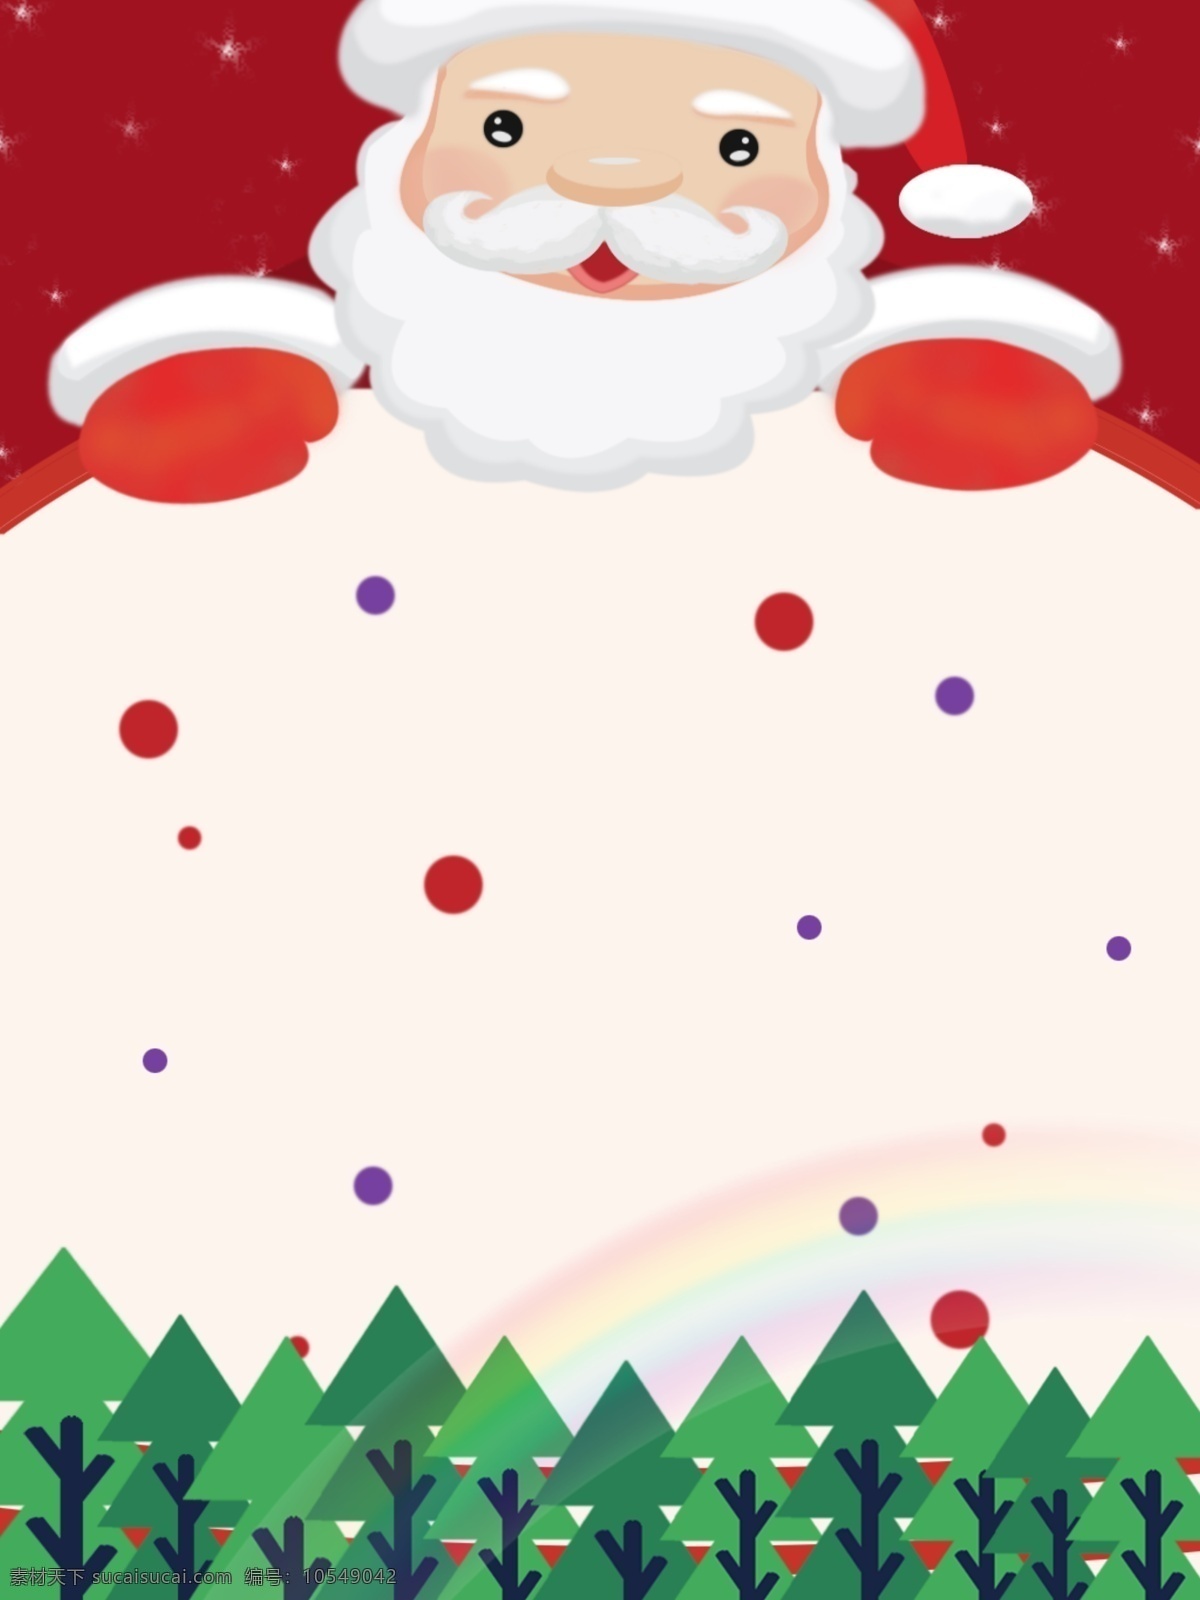 纯 手绘 圣诞老人 圣诞节 背景 圣诞树 彩虹 星空 背景素材 纯手绘